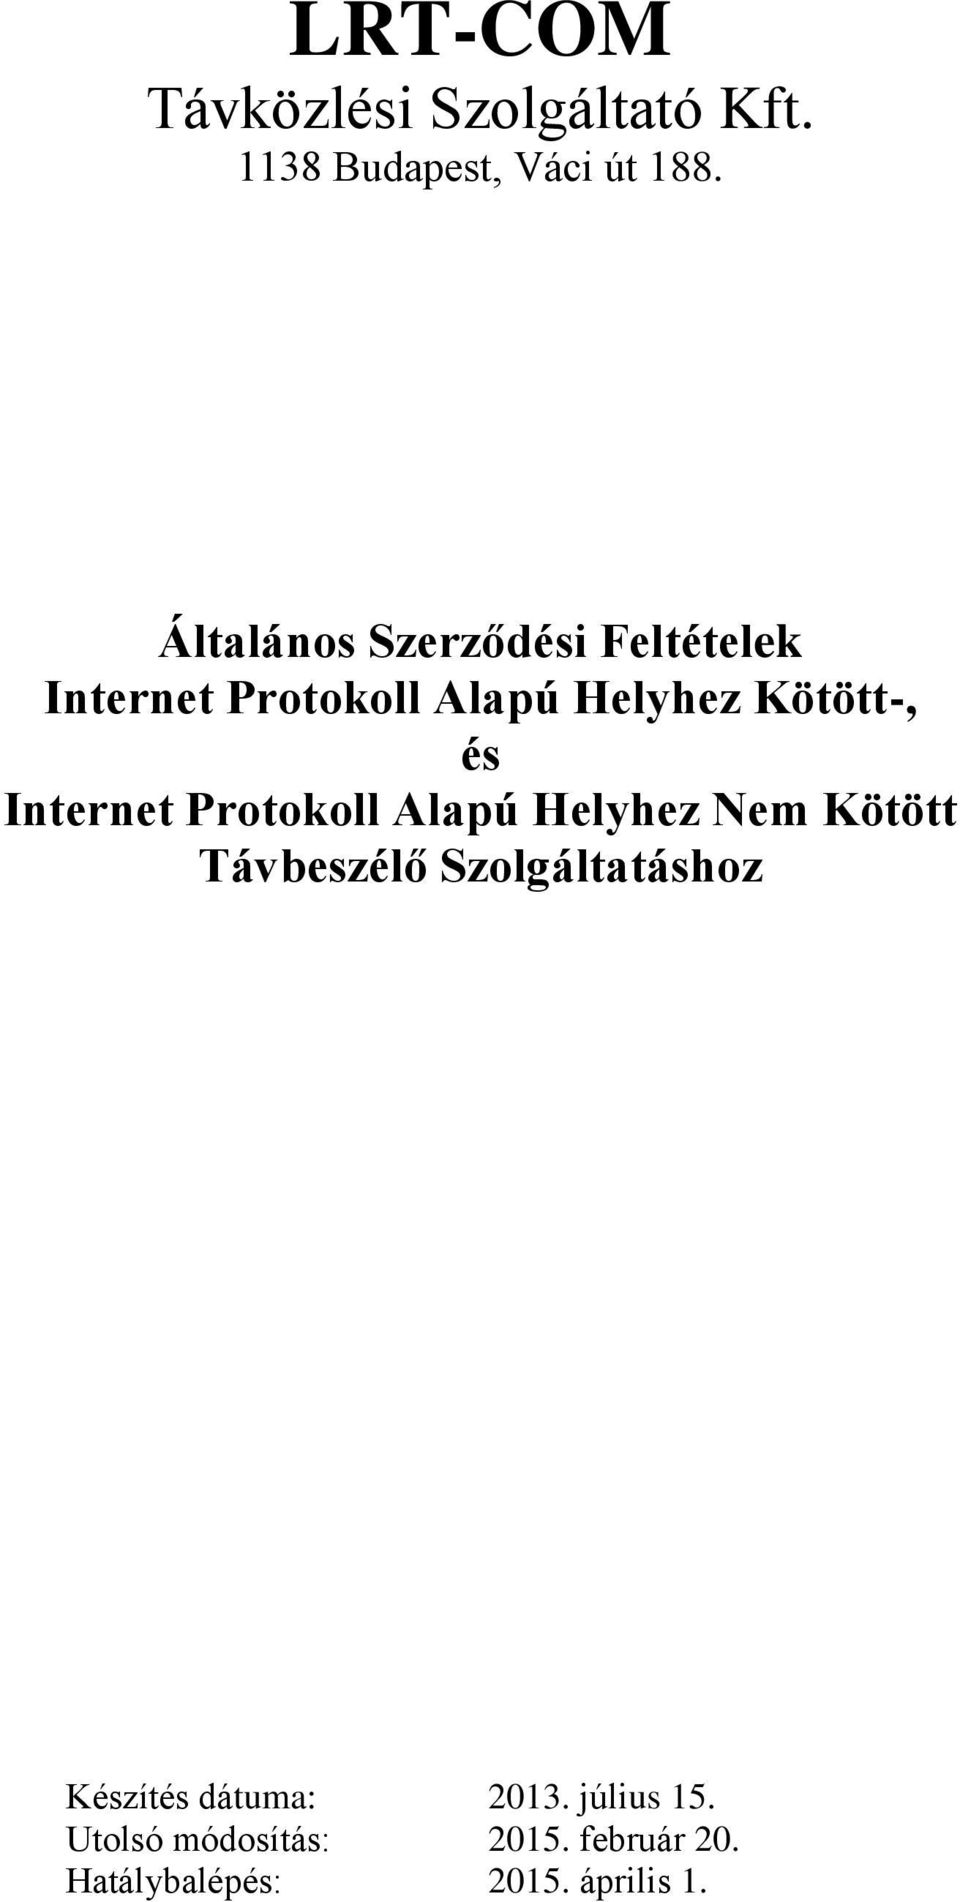 Internet Protokoll Alapú Helyhez Nem Kötött Távbeszélő Szolgáltatáshoz